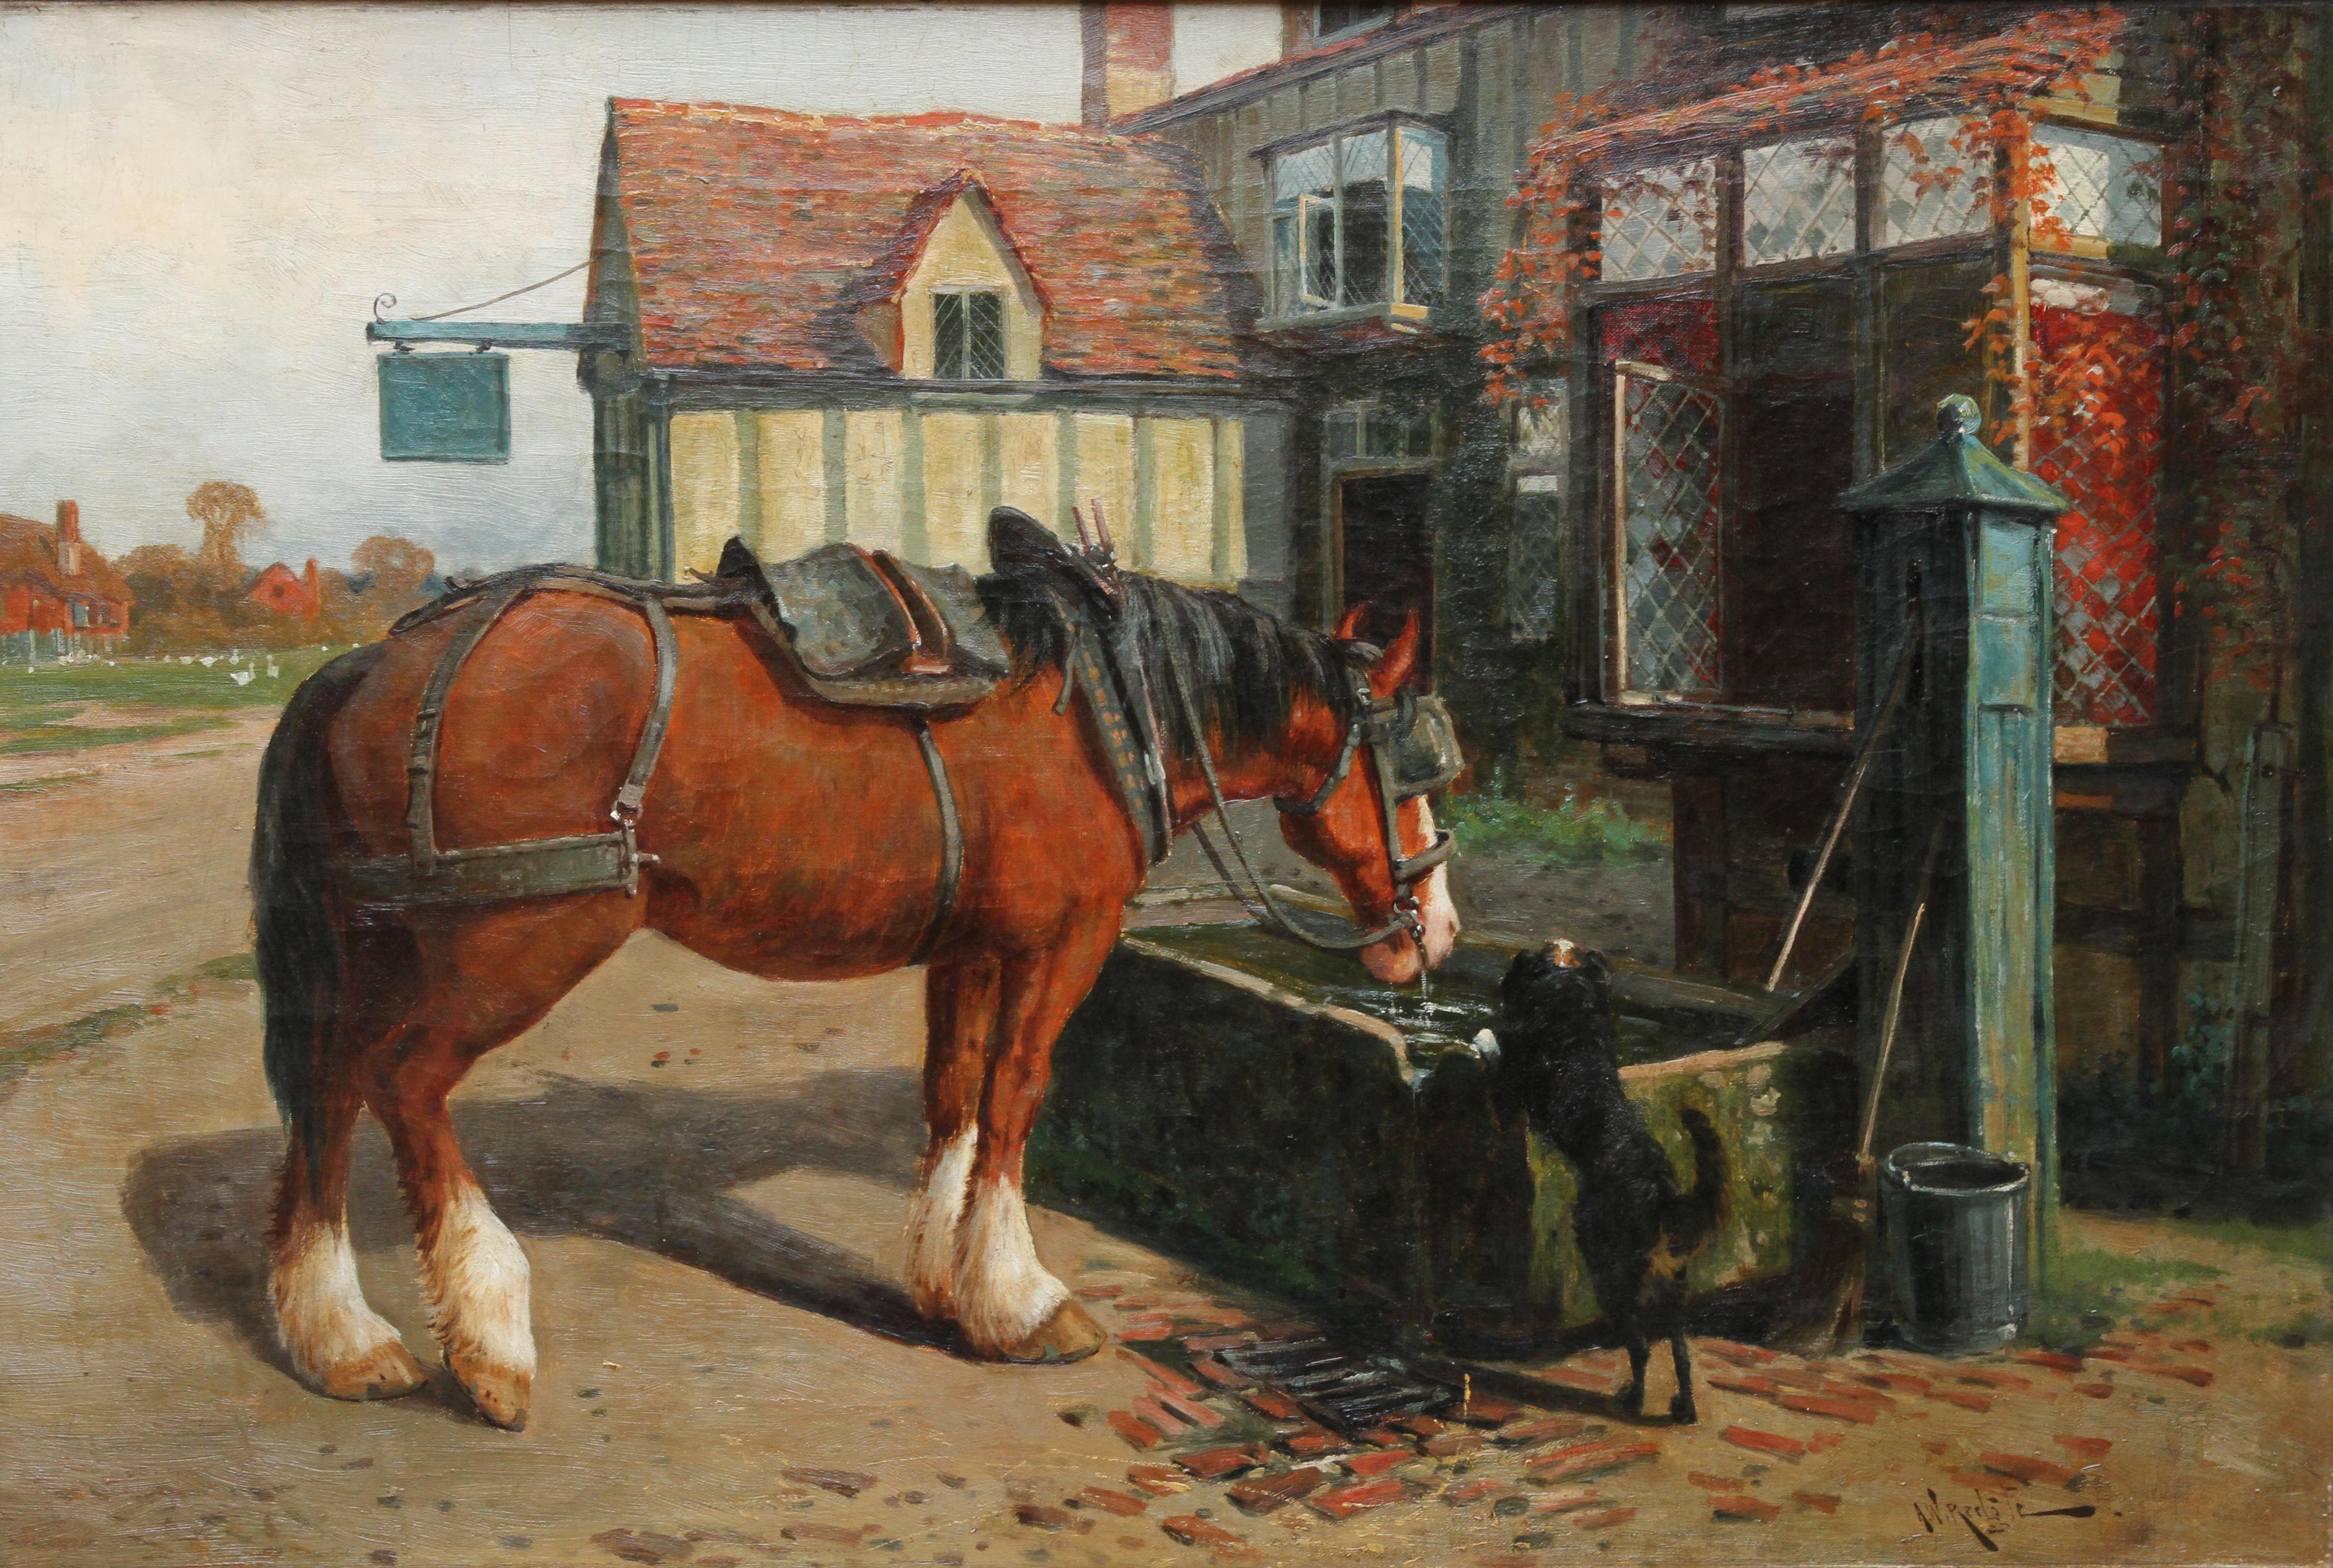 Bauernhofpferd in Trough vor einer Tavern – britisches viktorianisches Ölgemälde – Painting von Arthur William Redgate